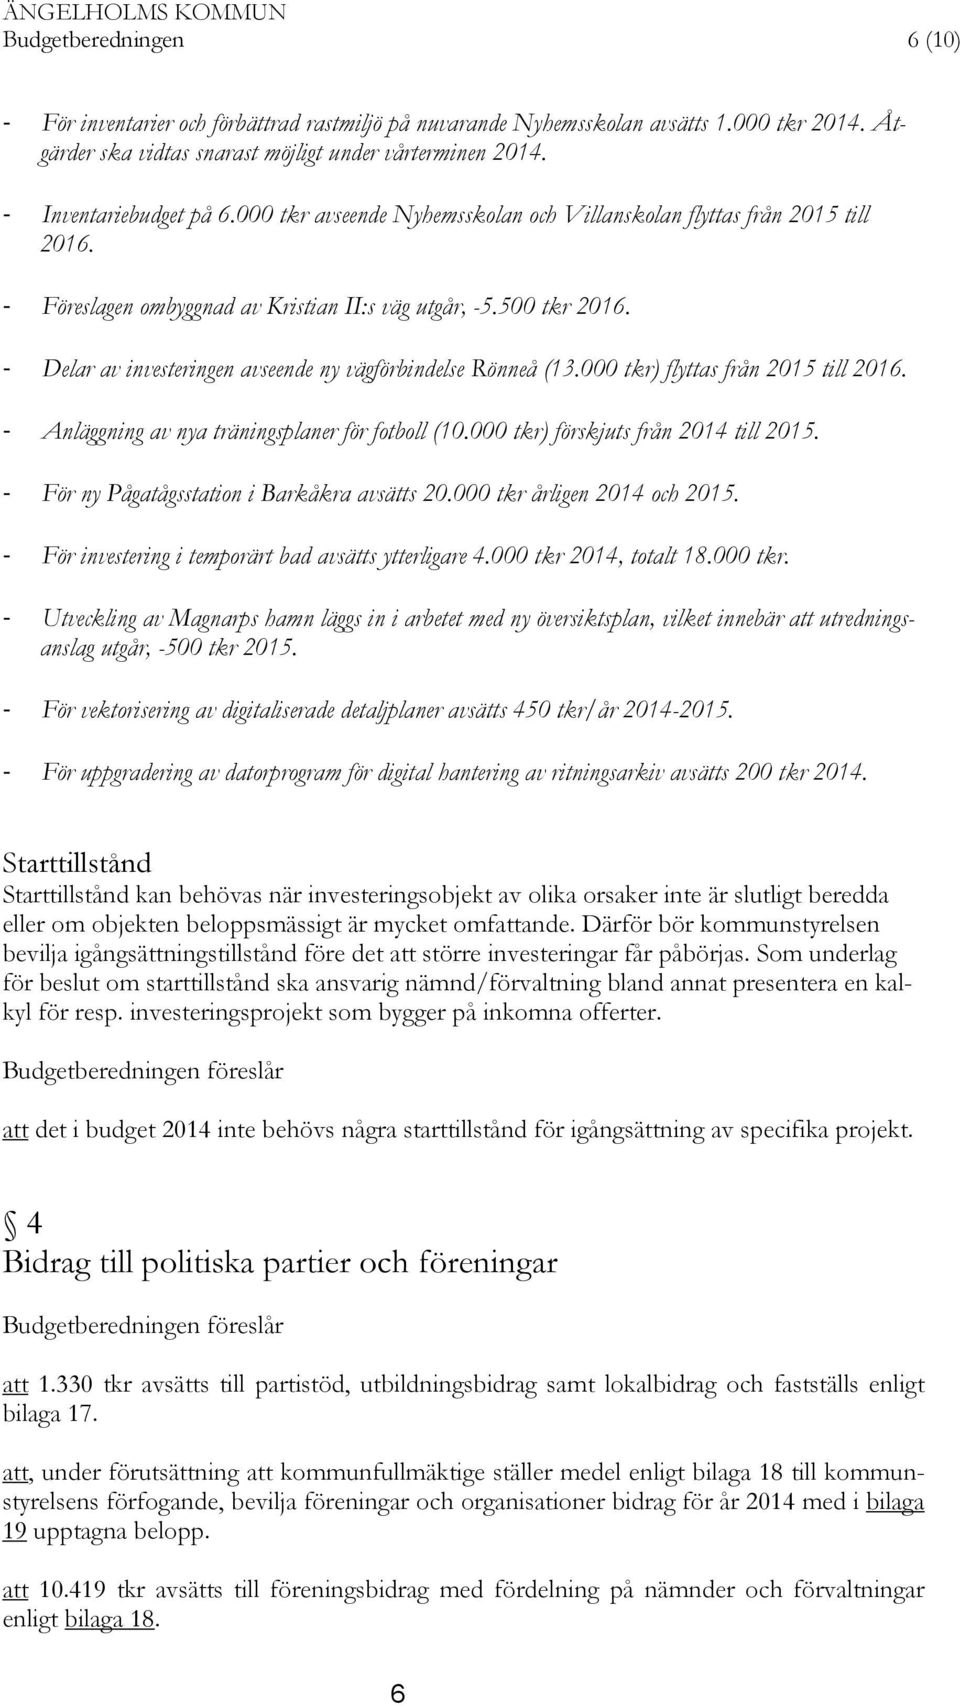 - Delar av investeringen avseende ny vägförbindelse Rönneå (13.000 tkr) flyttas från 2015 till 2016. - Anläggning av nya träningsplaner för fotboll (10.000 tkr) förskjuts från 2014 till 2015.